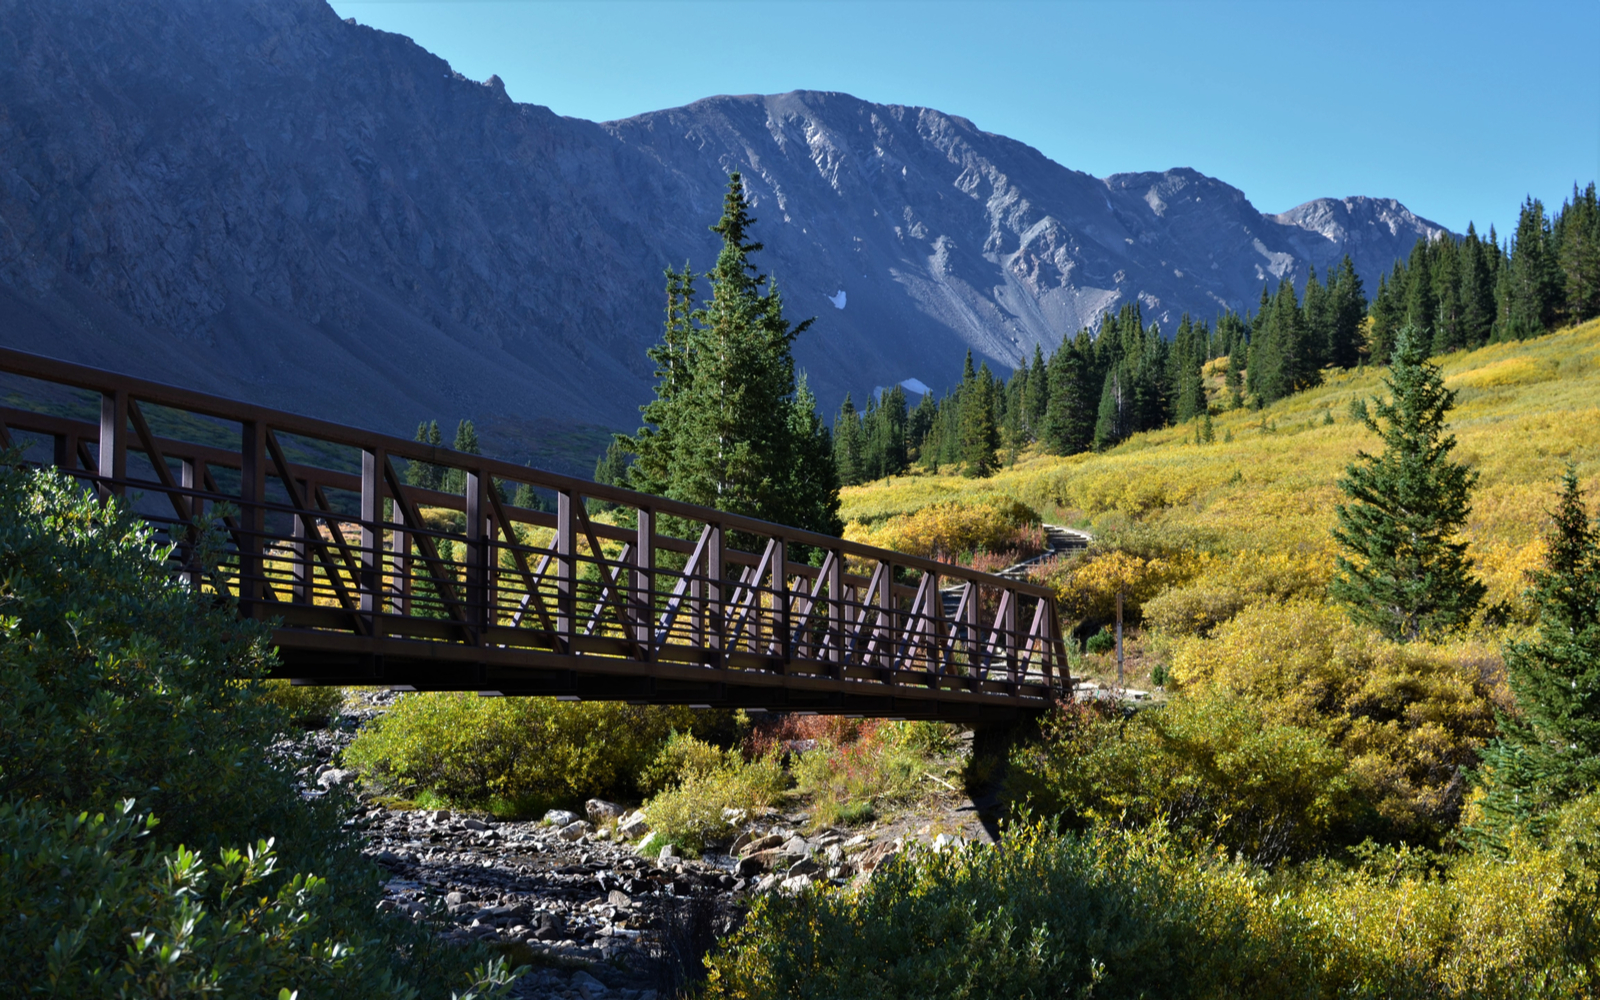 25 Best Hikes Near Denver in 2023